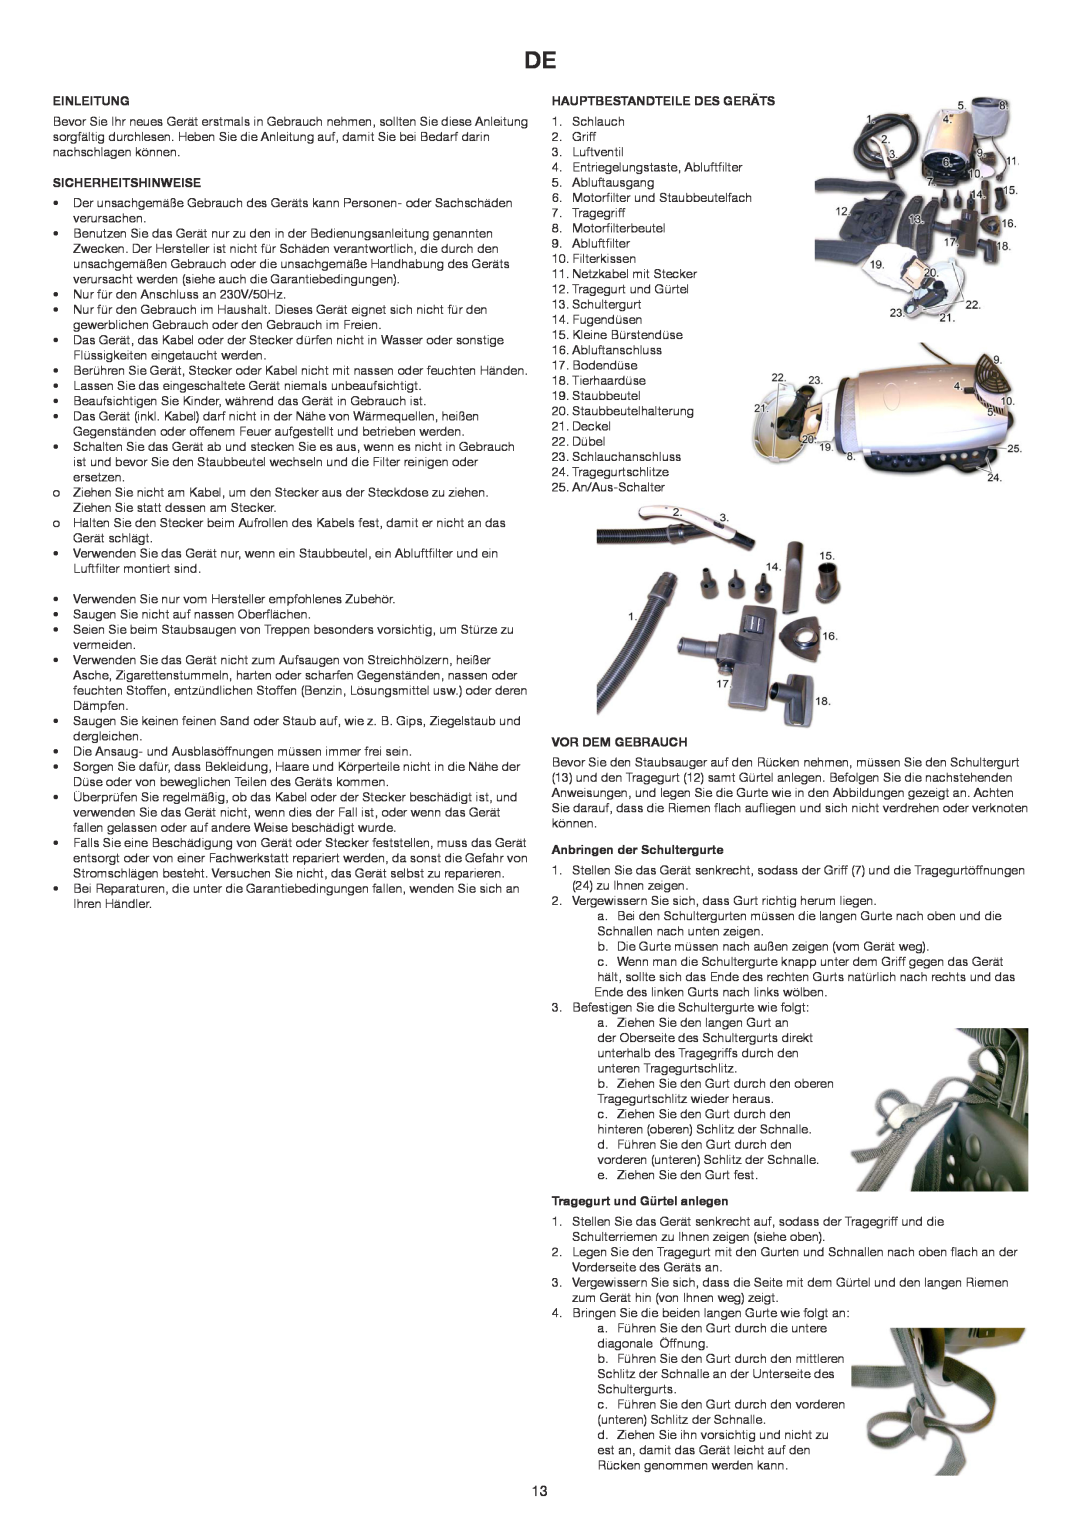 Melissa 240-006 manual Einleitung, Sicherheitshinweise, Hauptbestandteile Des Geräts, Vor Dem Gebrauch 